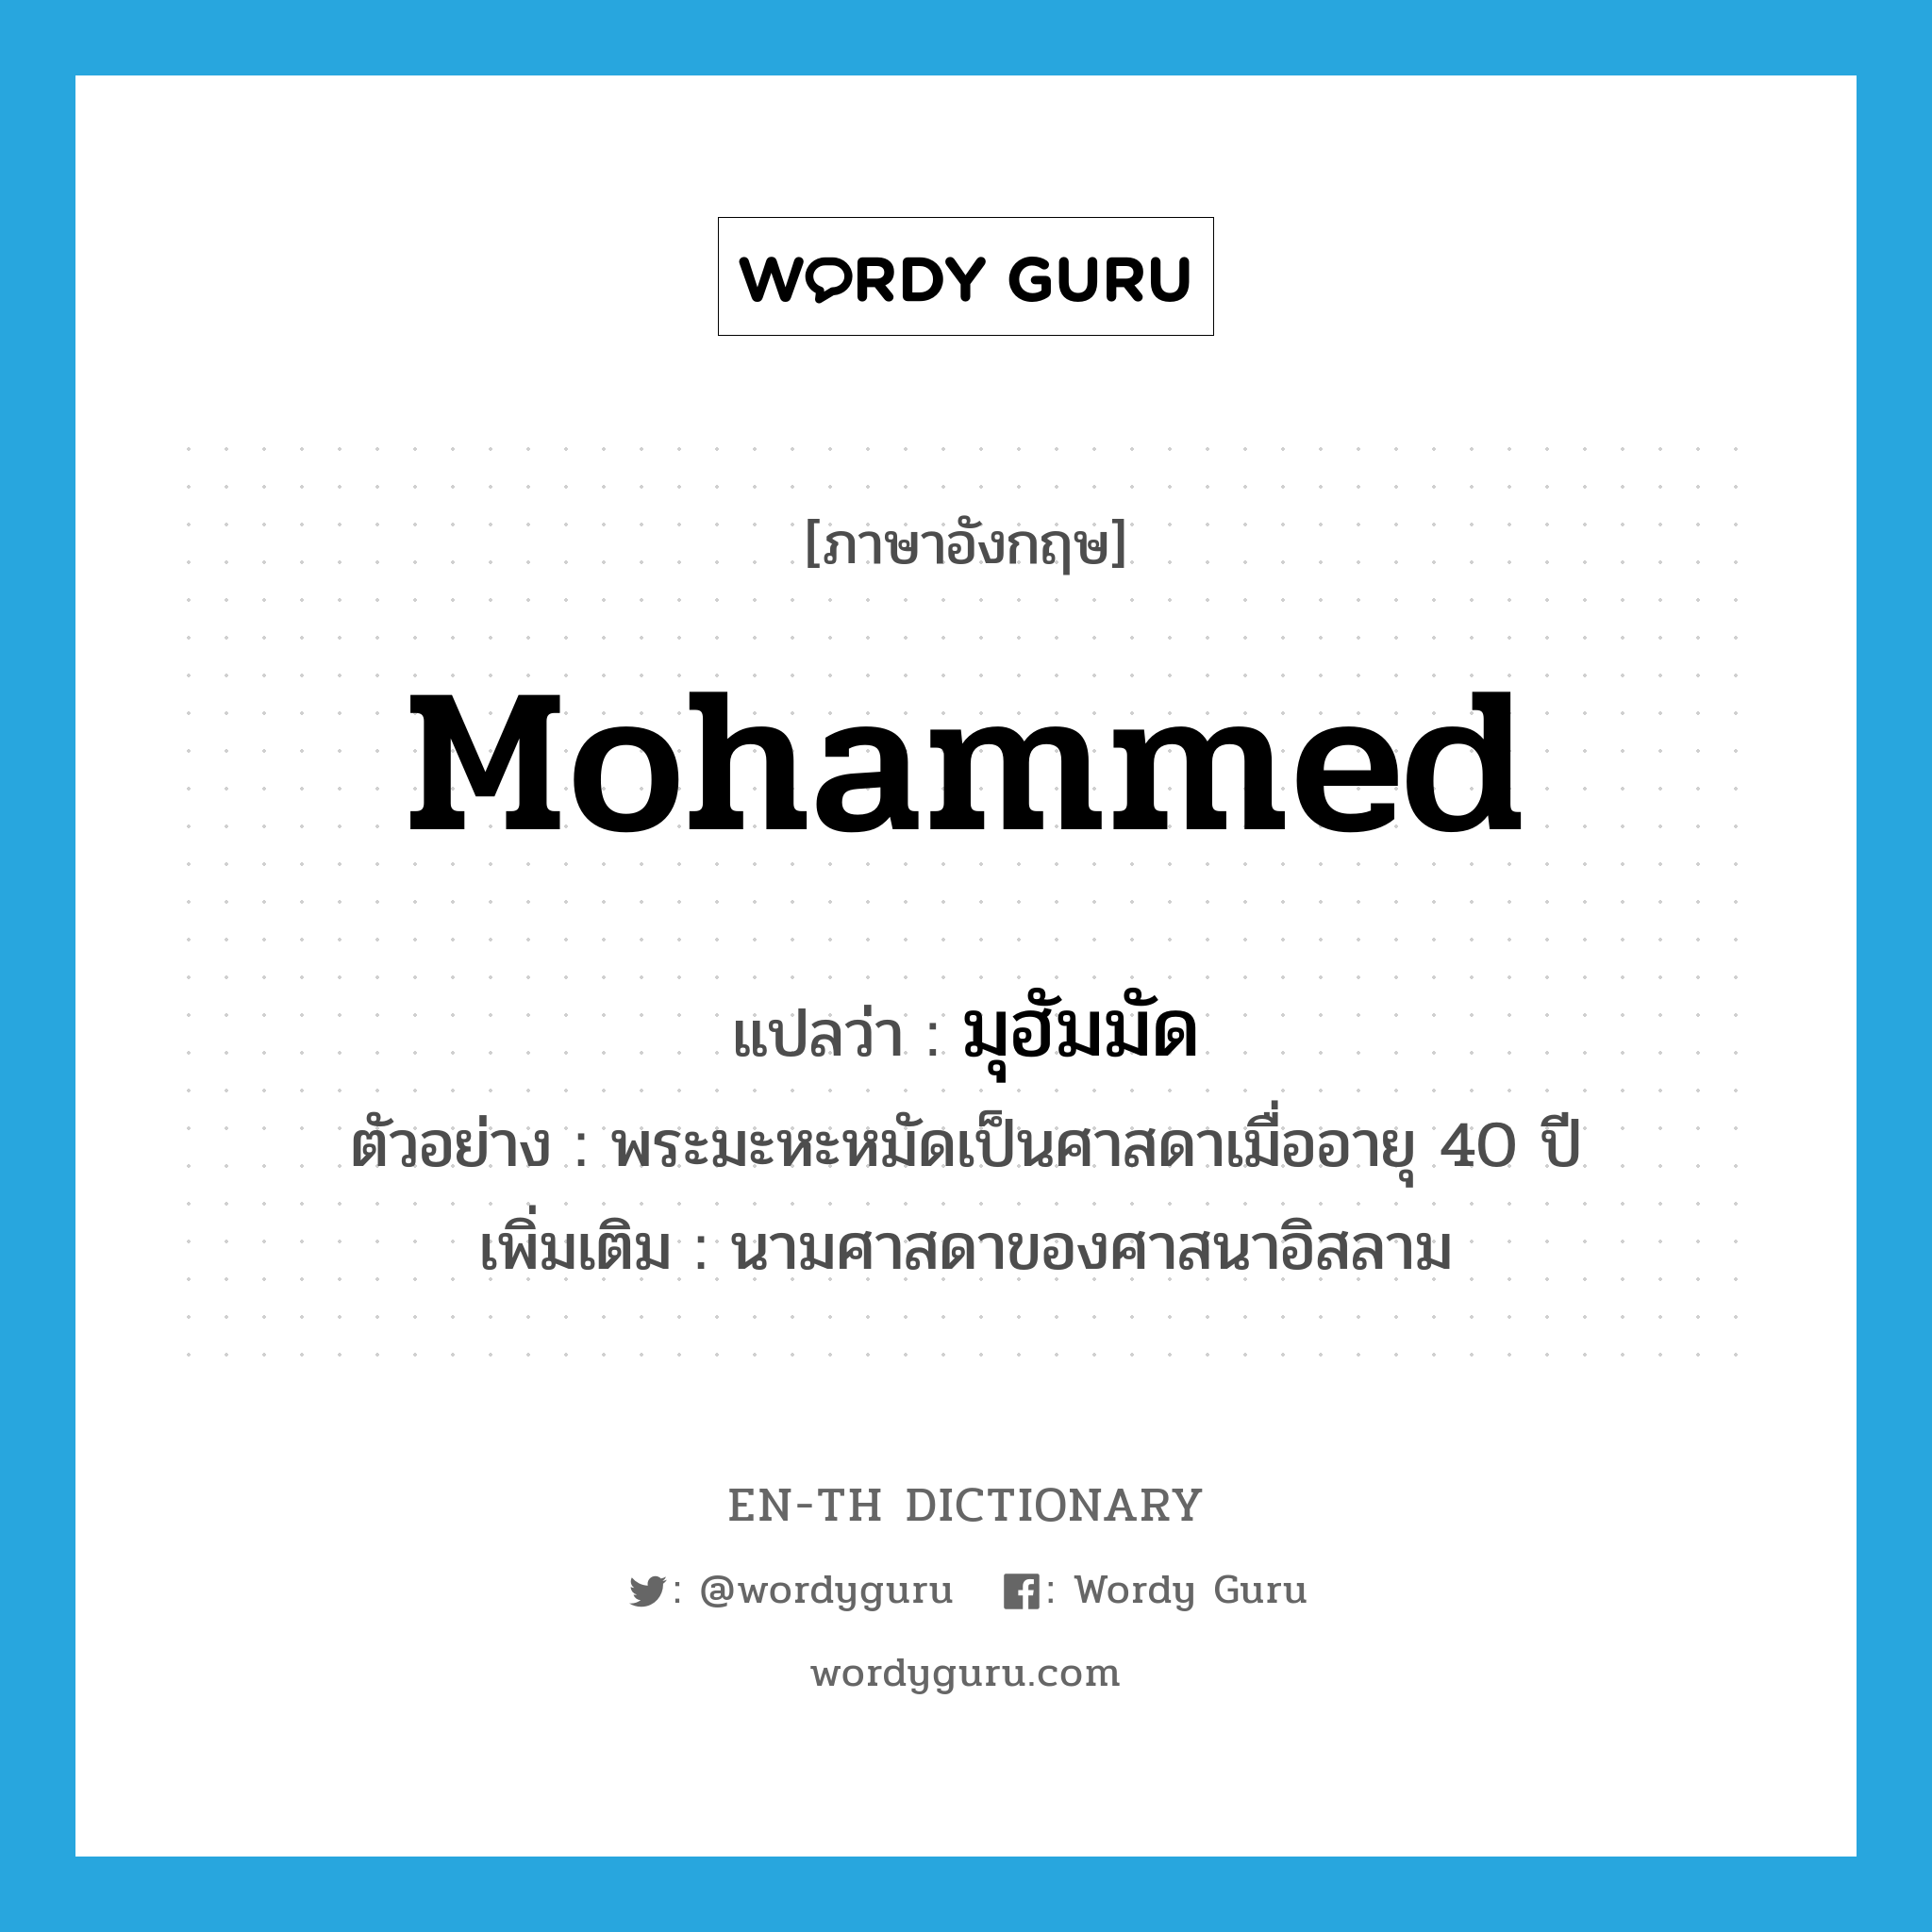 มุฮัมมัด ภาษาอังกฤษ?, คำศัพท์ภาษาอังกฤษ มุฮัมมัด แปลว่า Mohammed ประเภท N ตัวอย่าง พระมะหะหมัดเป็นศาสดาเมื่ออายุ 40 ปี เพิ่มเติม นามศาสดาของศาสนาอิสลาม หมวด N